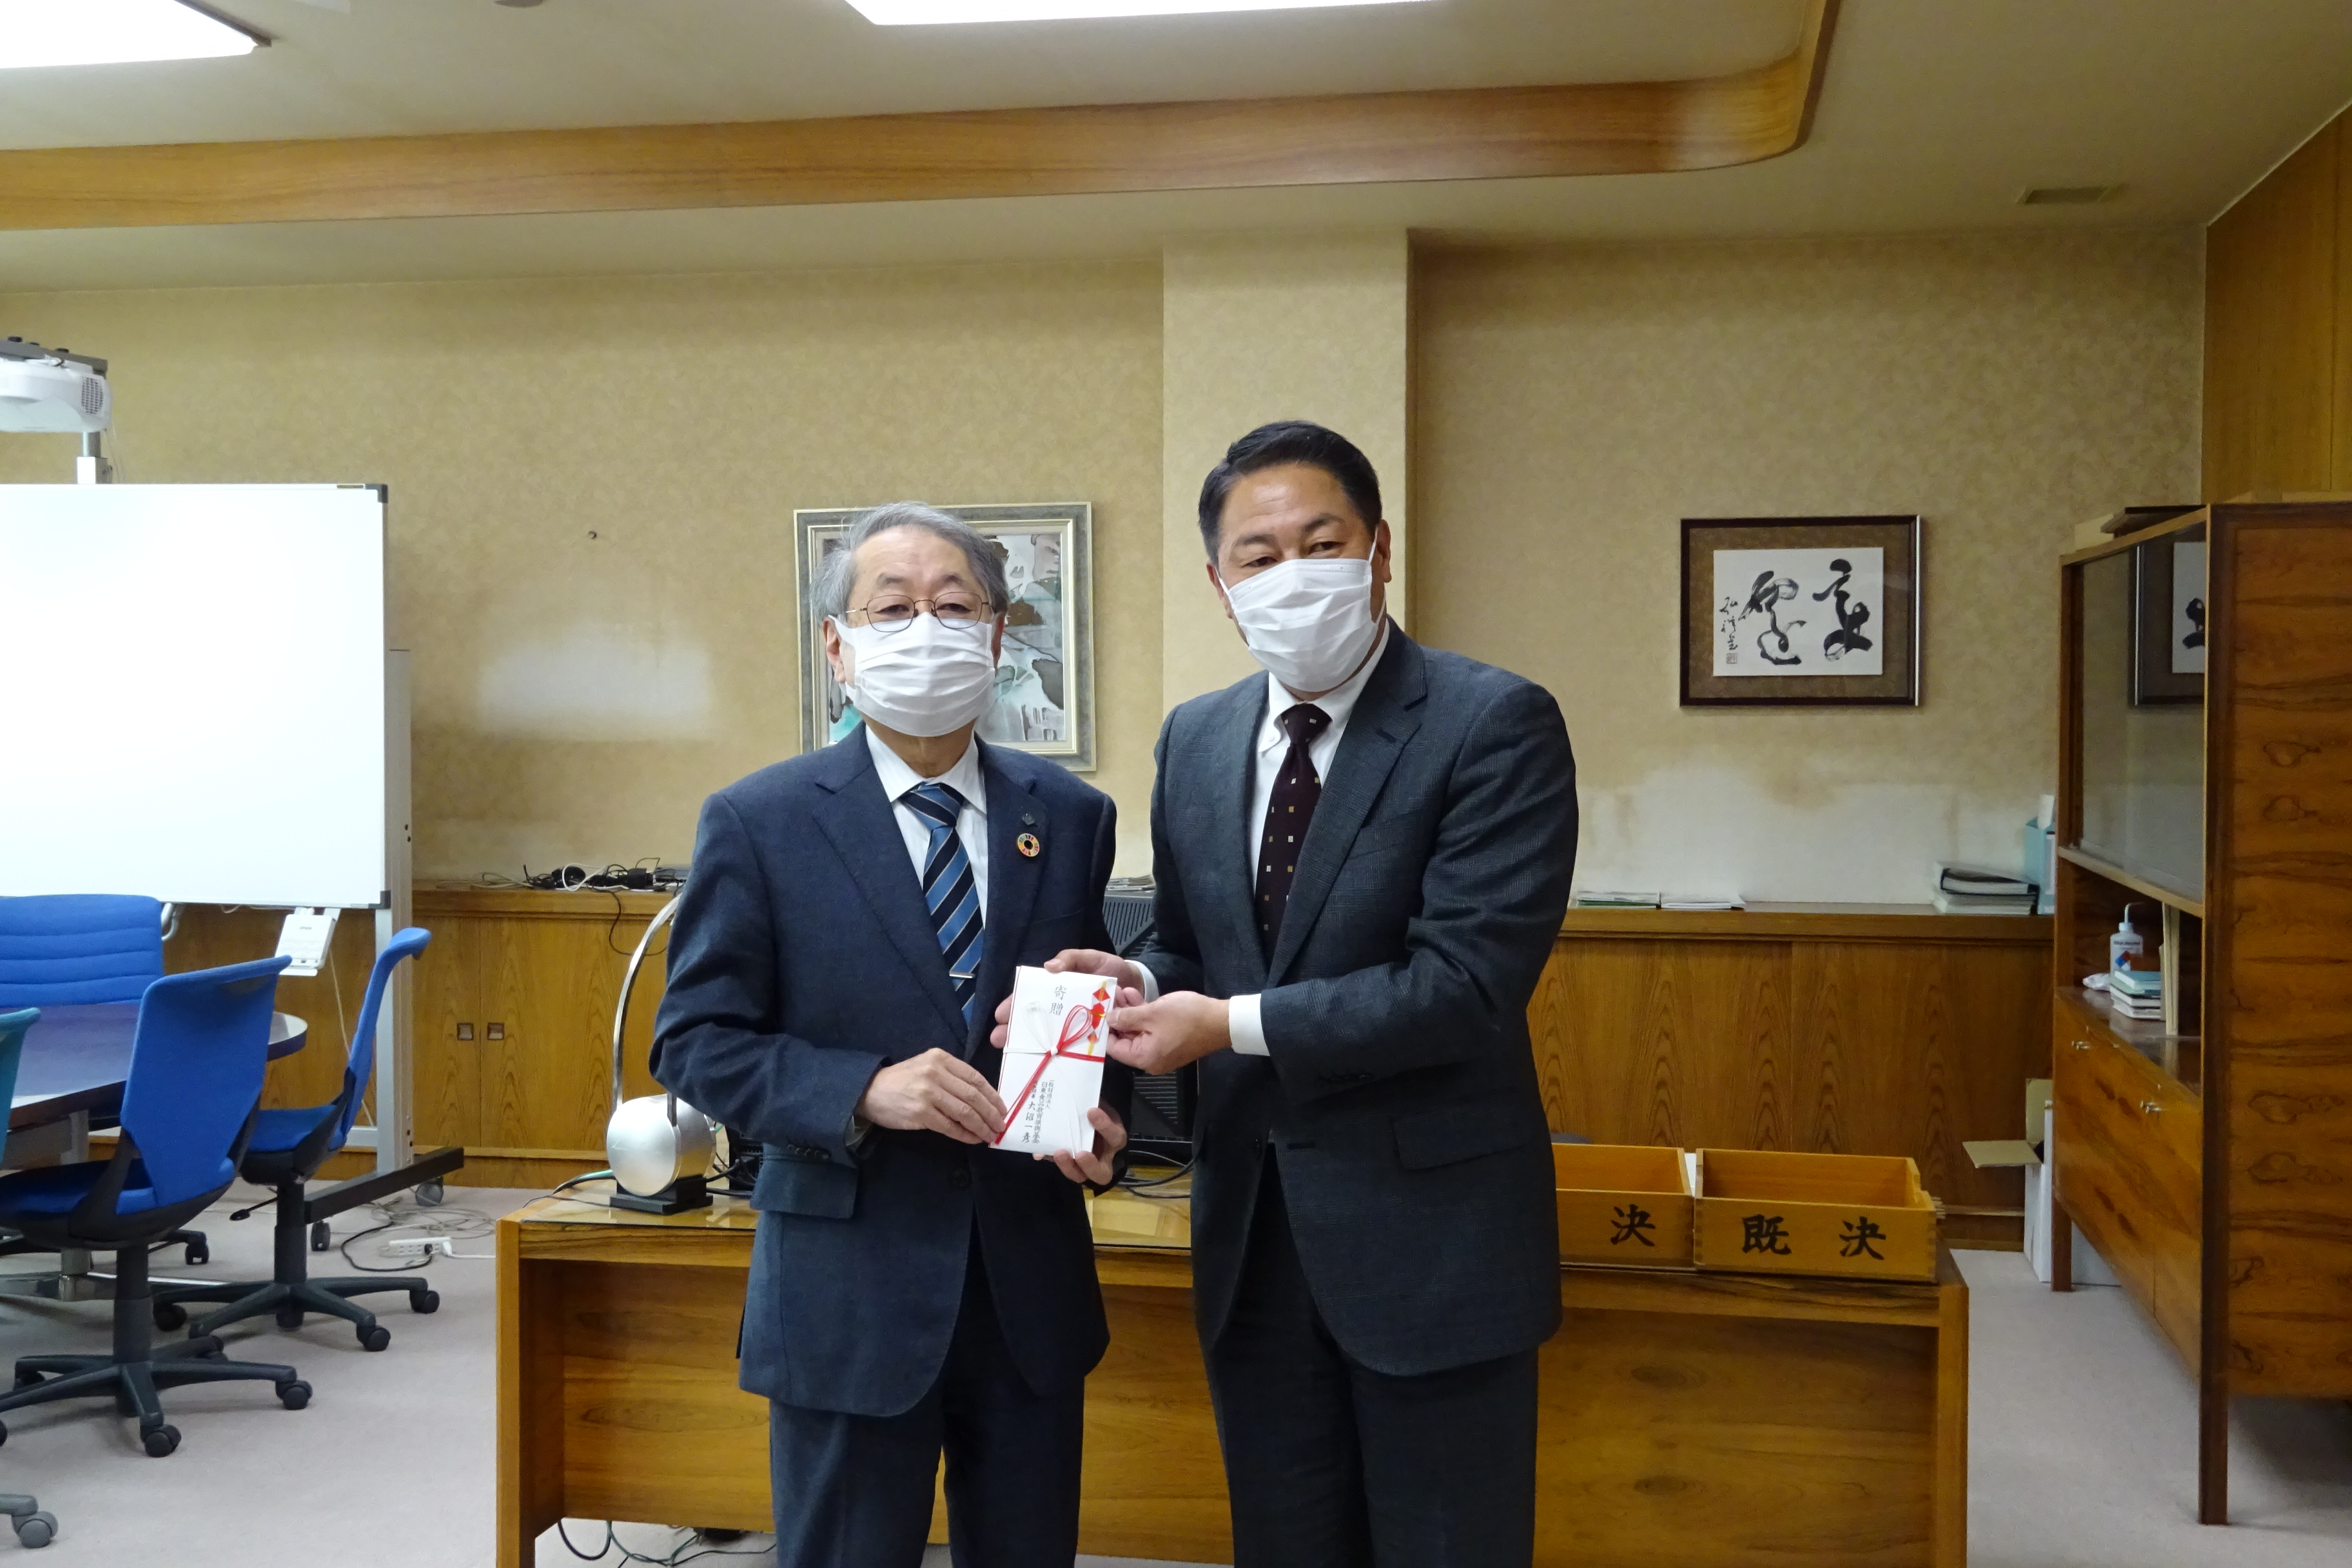 遠藤取締役（右）から寄付金を贈呈される玉手学長の画像